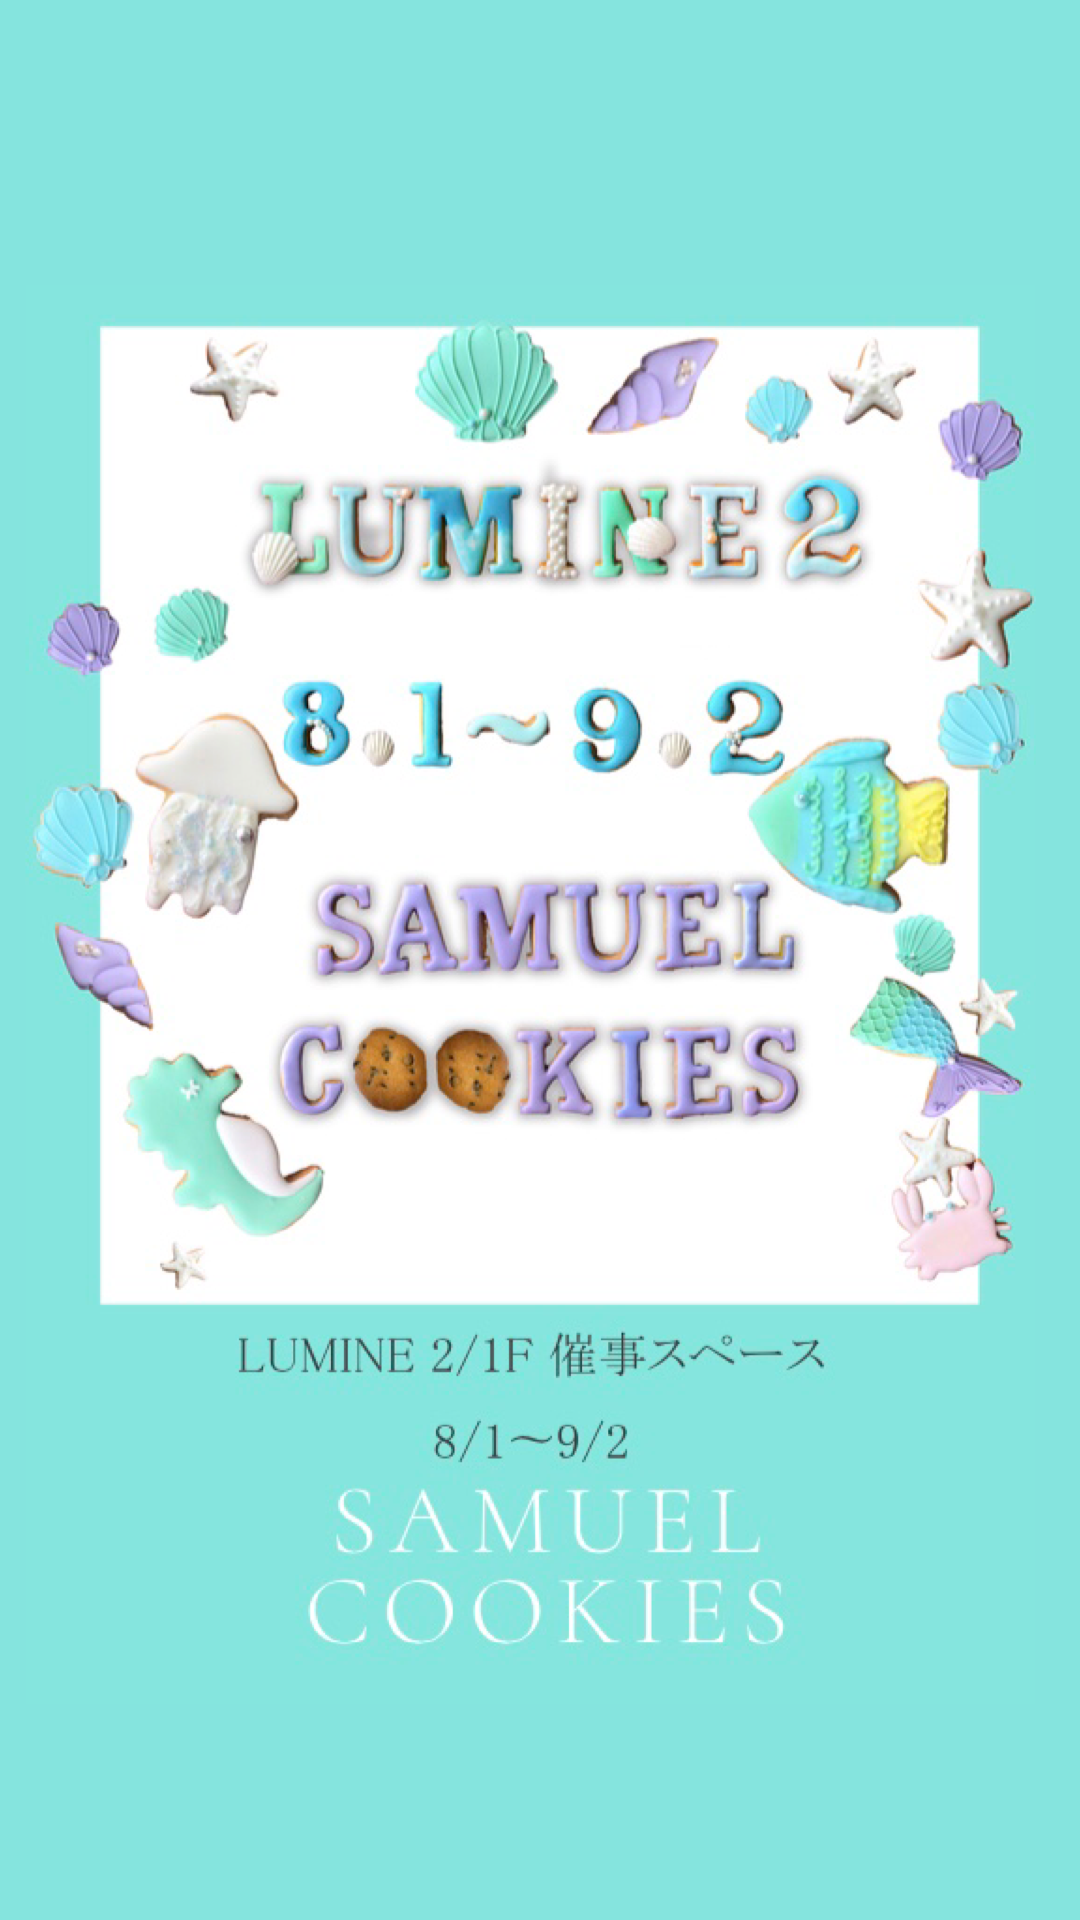 新宿LUMINE2アイシングクッキー販売